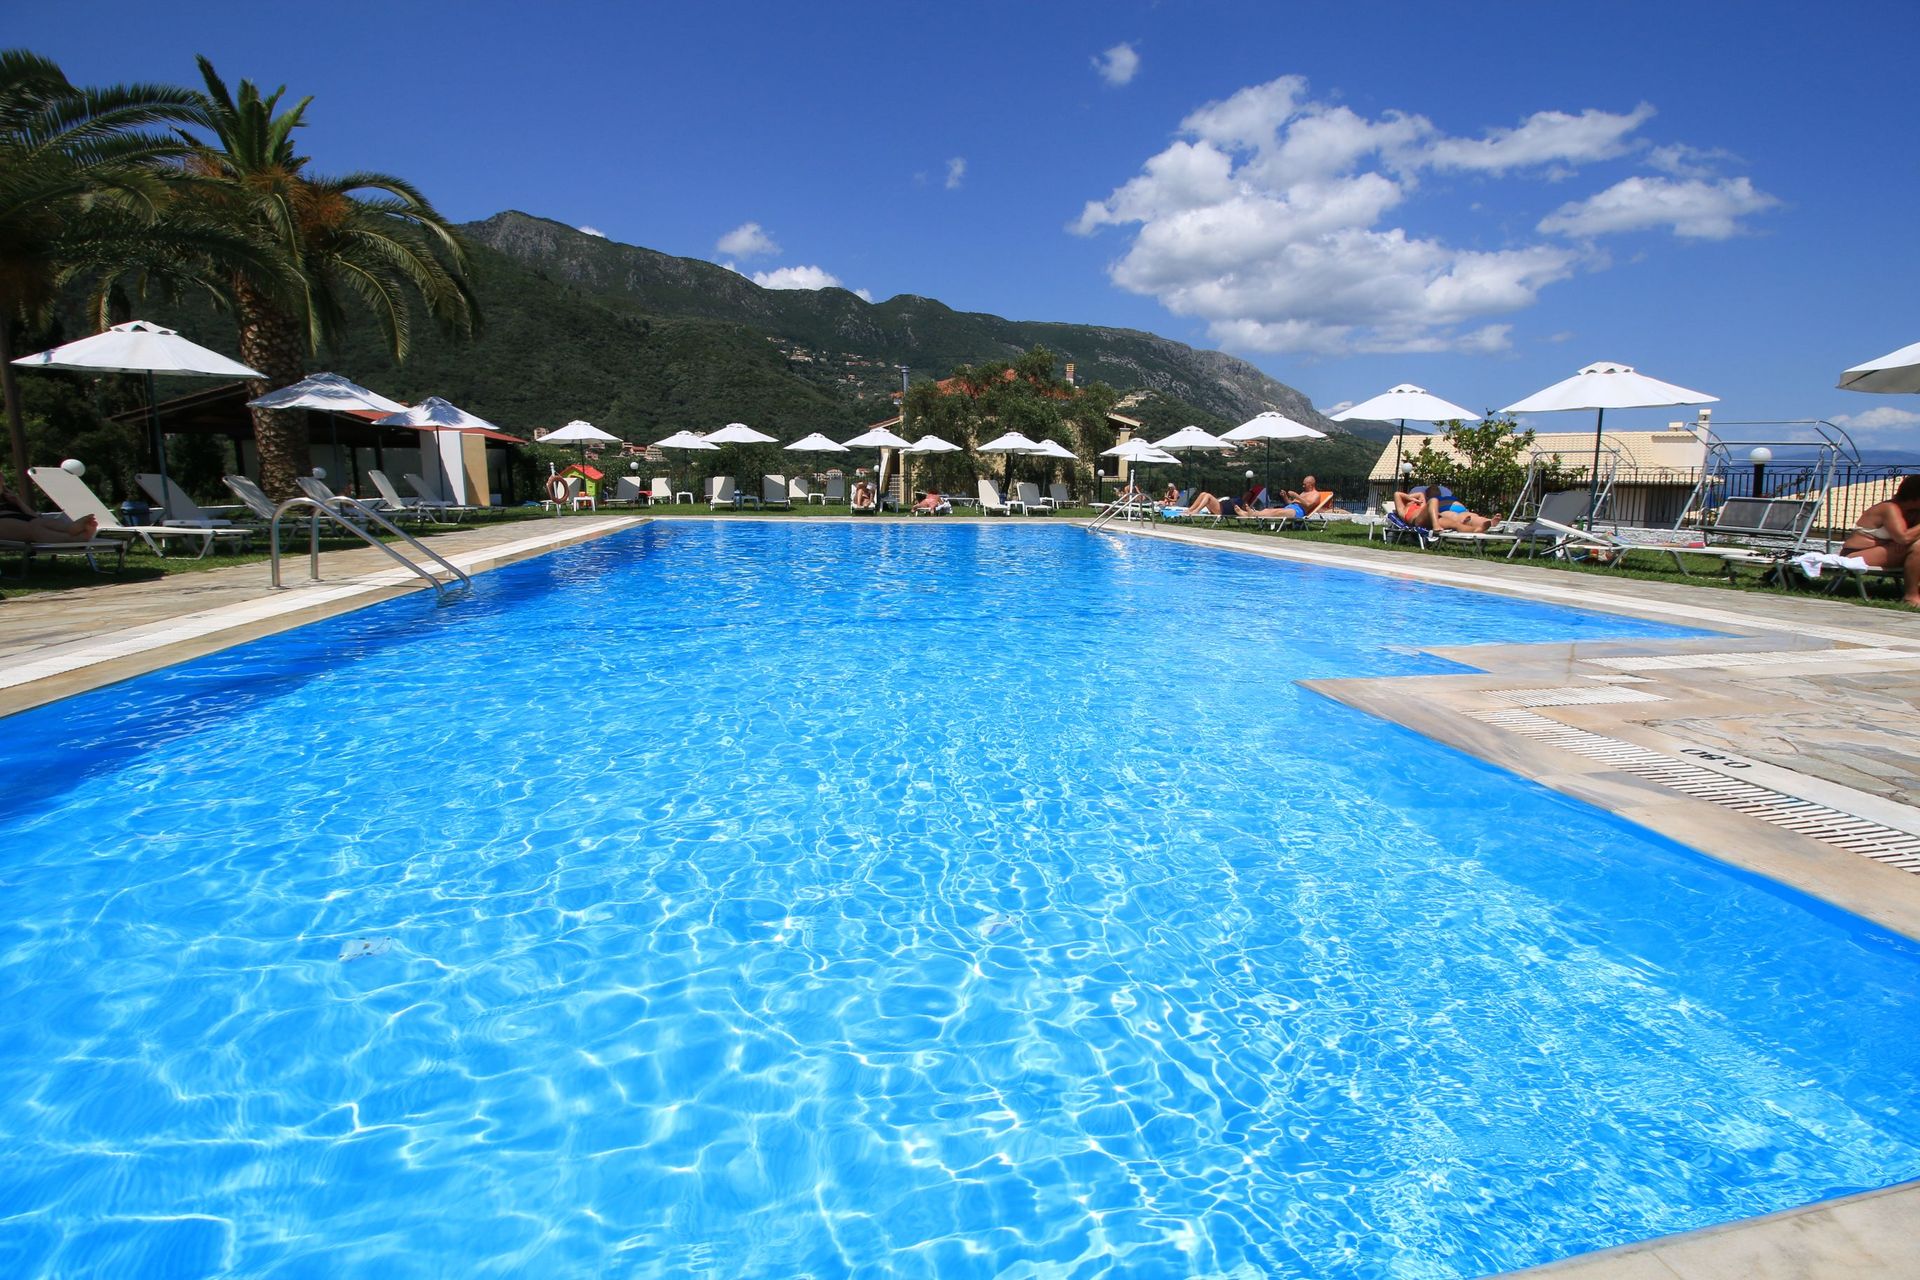 Hotel Yannis Corfu - Κέρκυρα ✦ -49% ✦ 4 Ημέρες (3 Διανυκτερεύσεις)